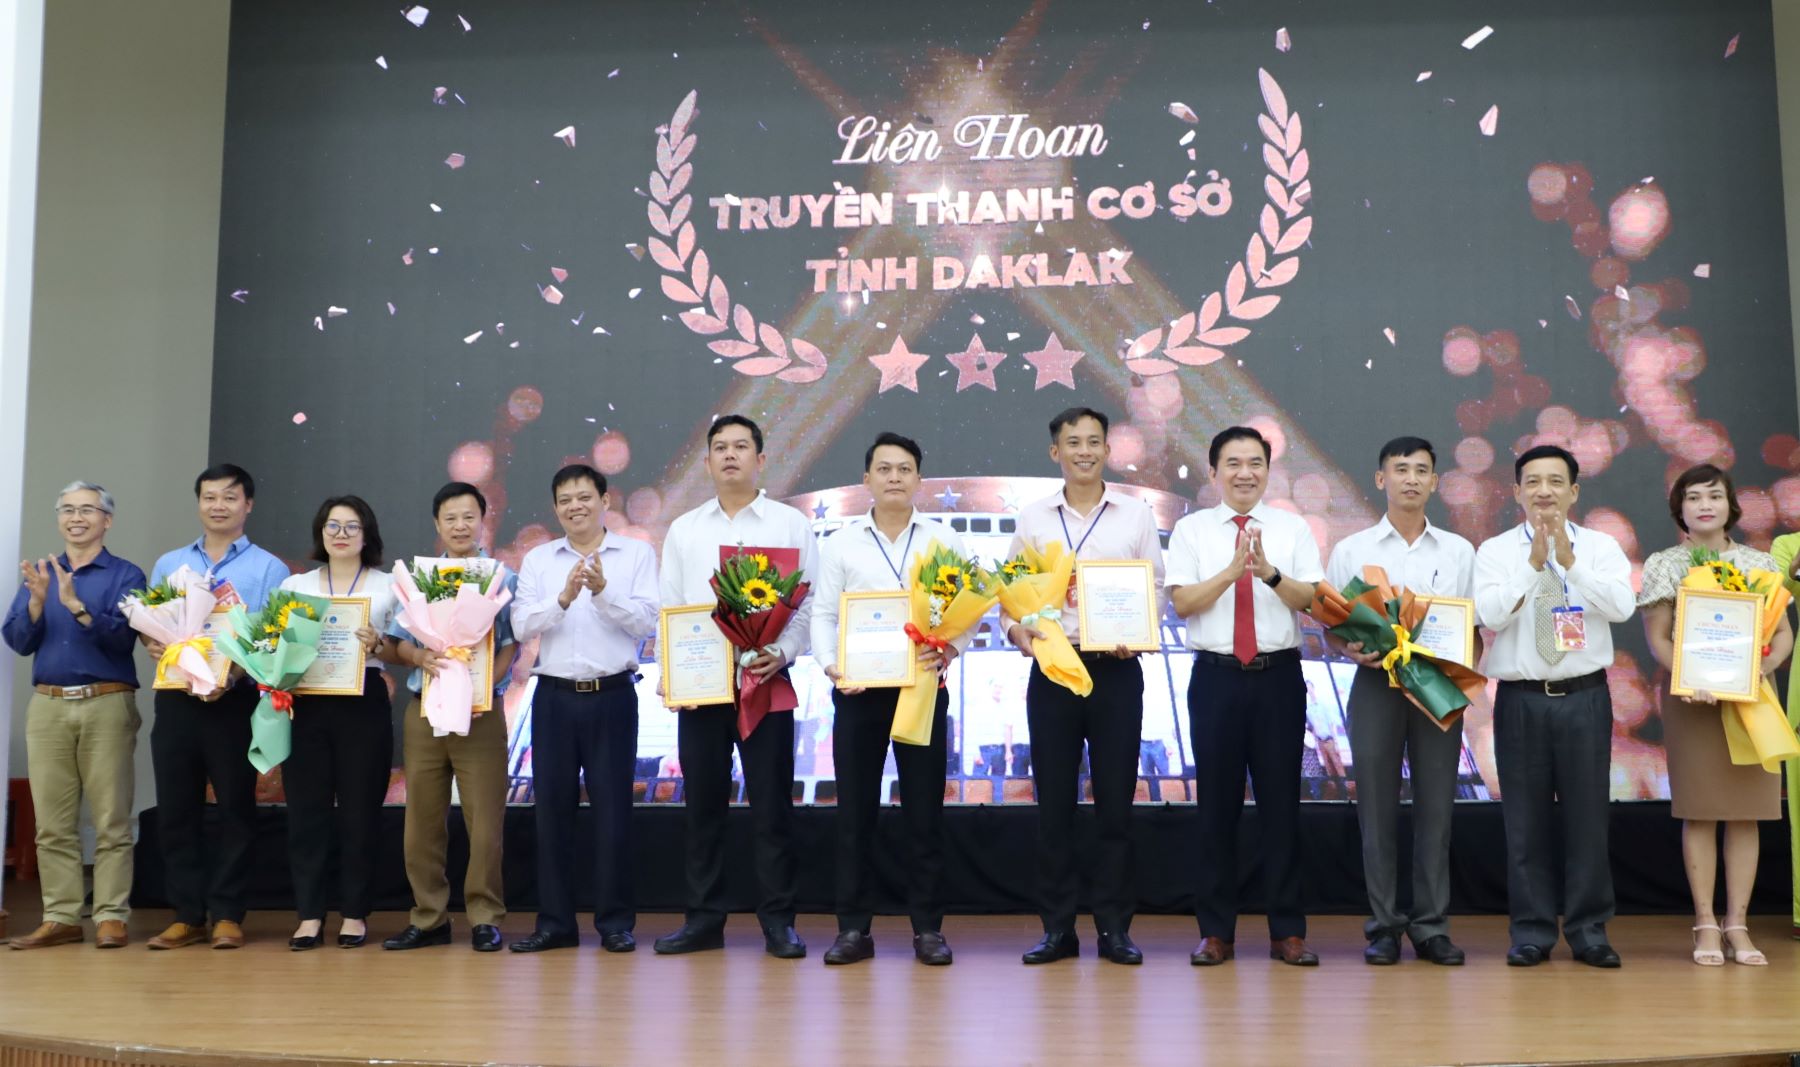 Bế mạc Liên hoan Truyền thanh cơ sở tỉnh Đắk Lắk lần thứ III - năm 2023